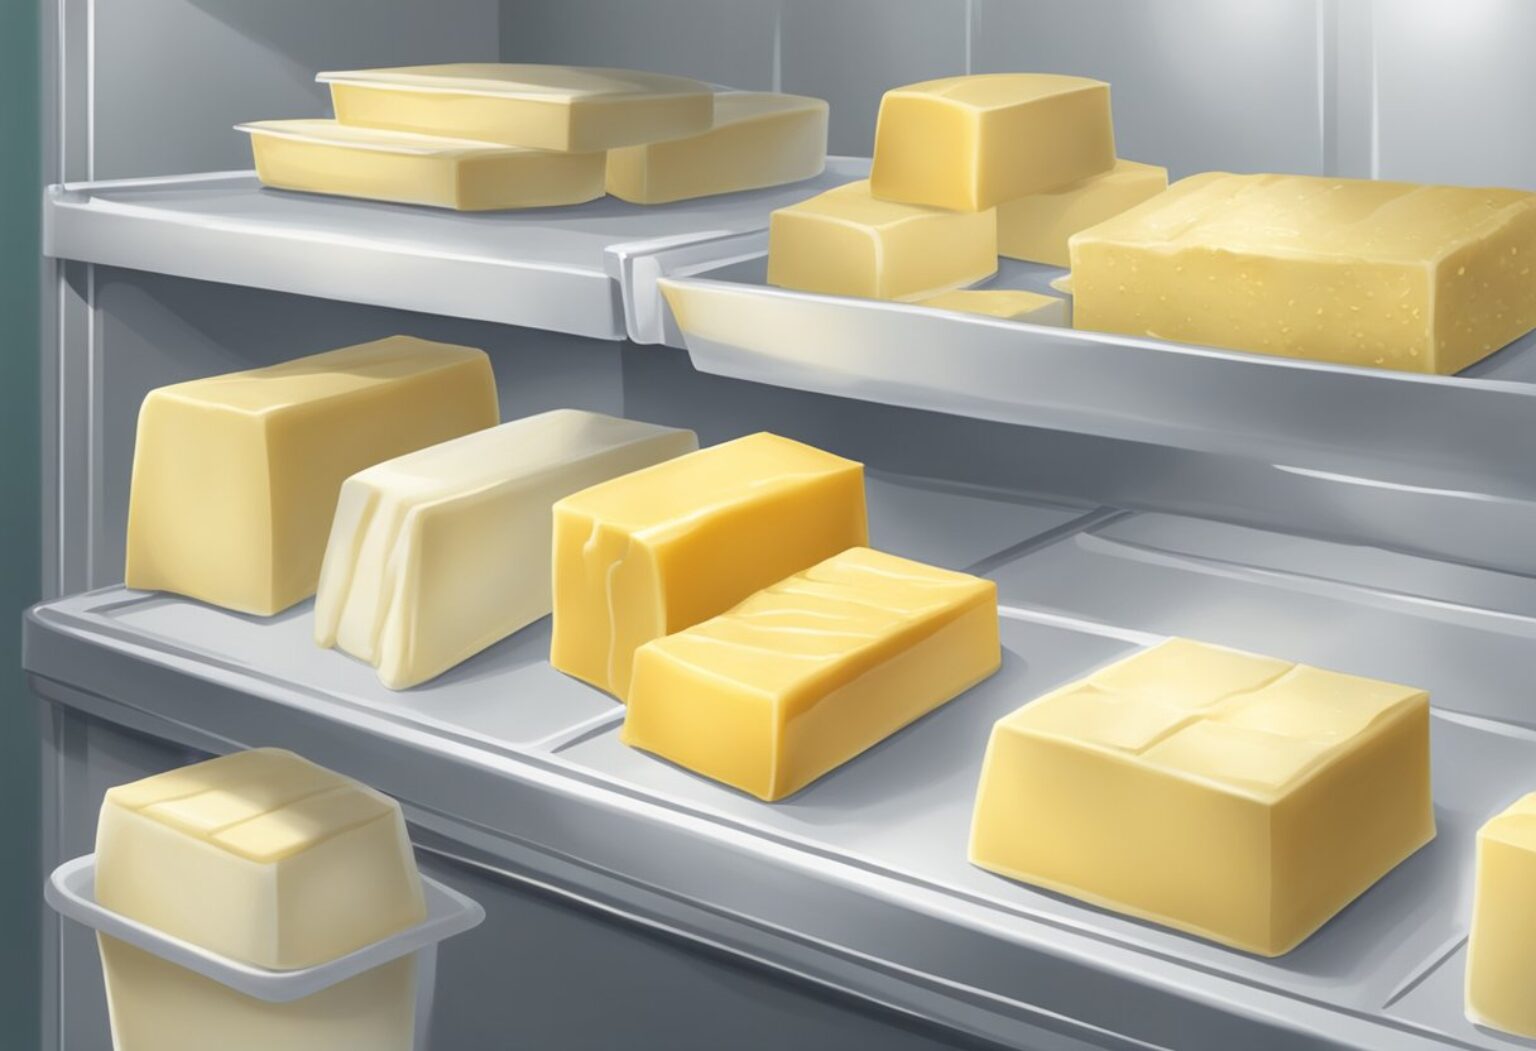 Manteiga pode ficar fora da geladeira